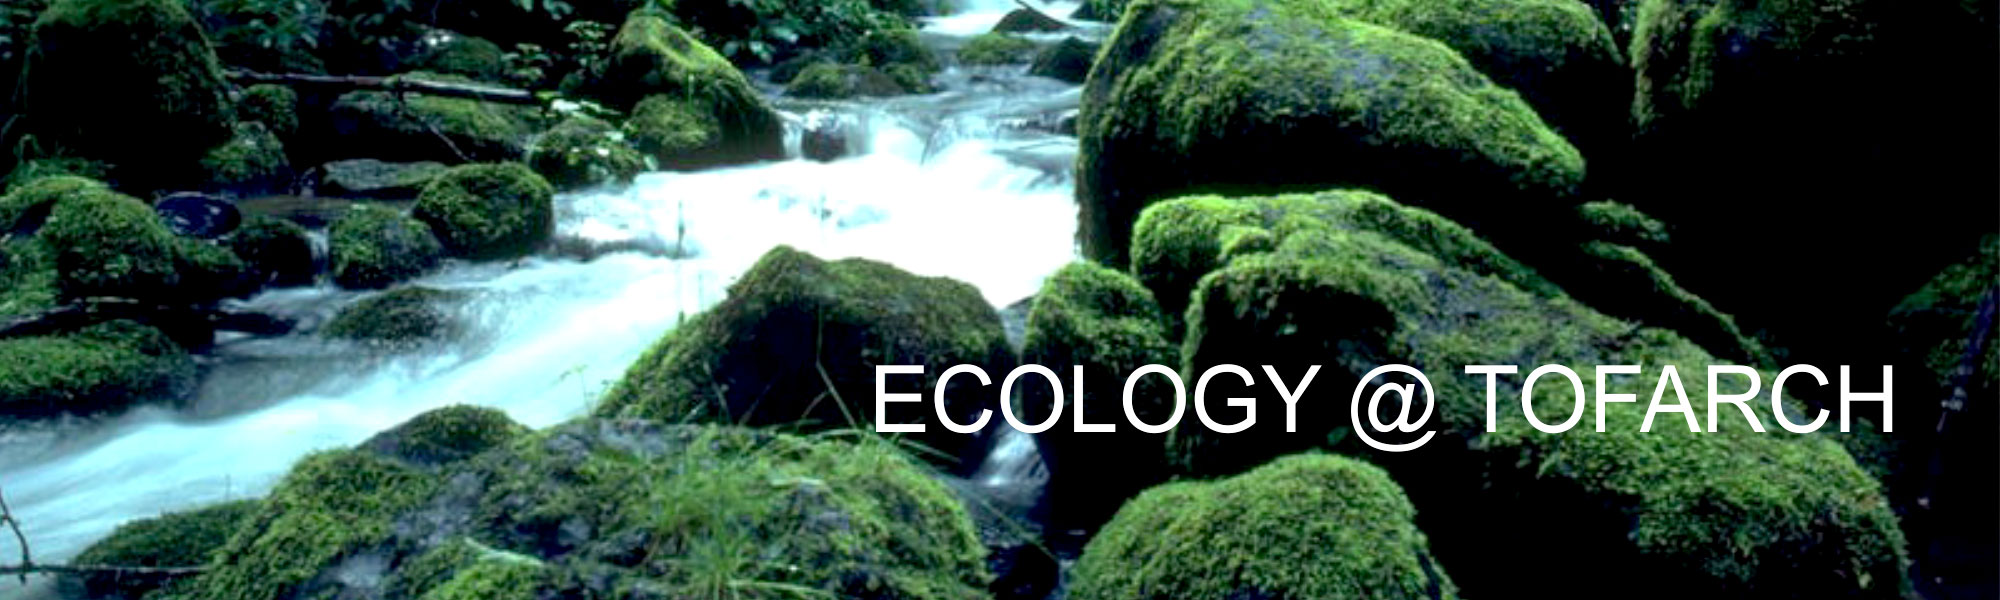 ecology image